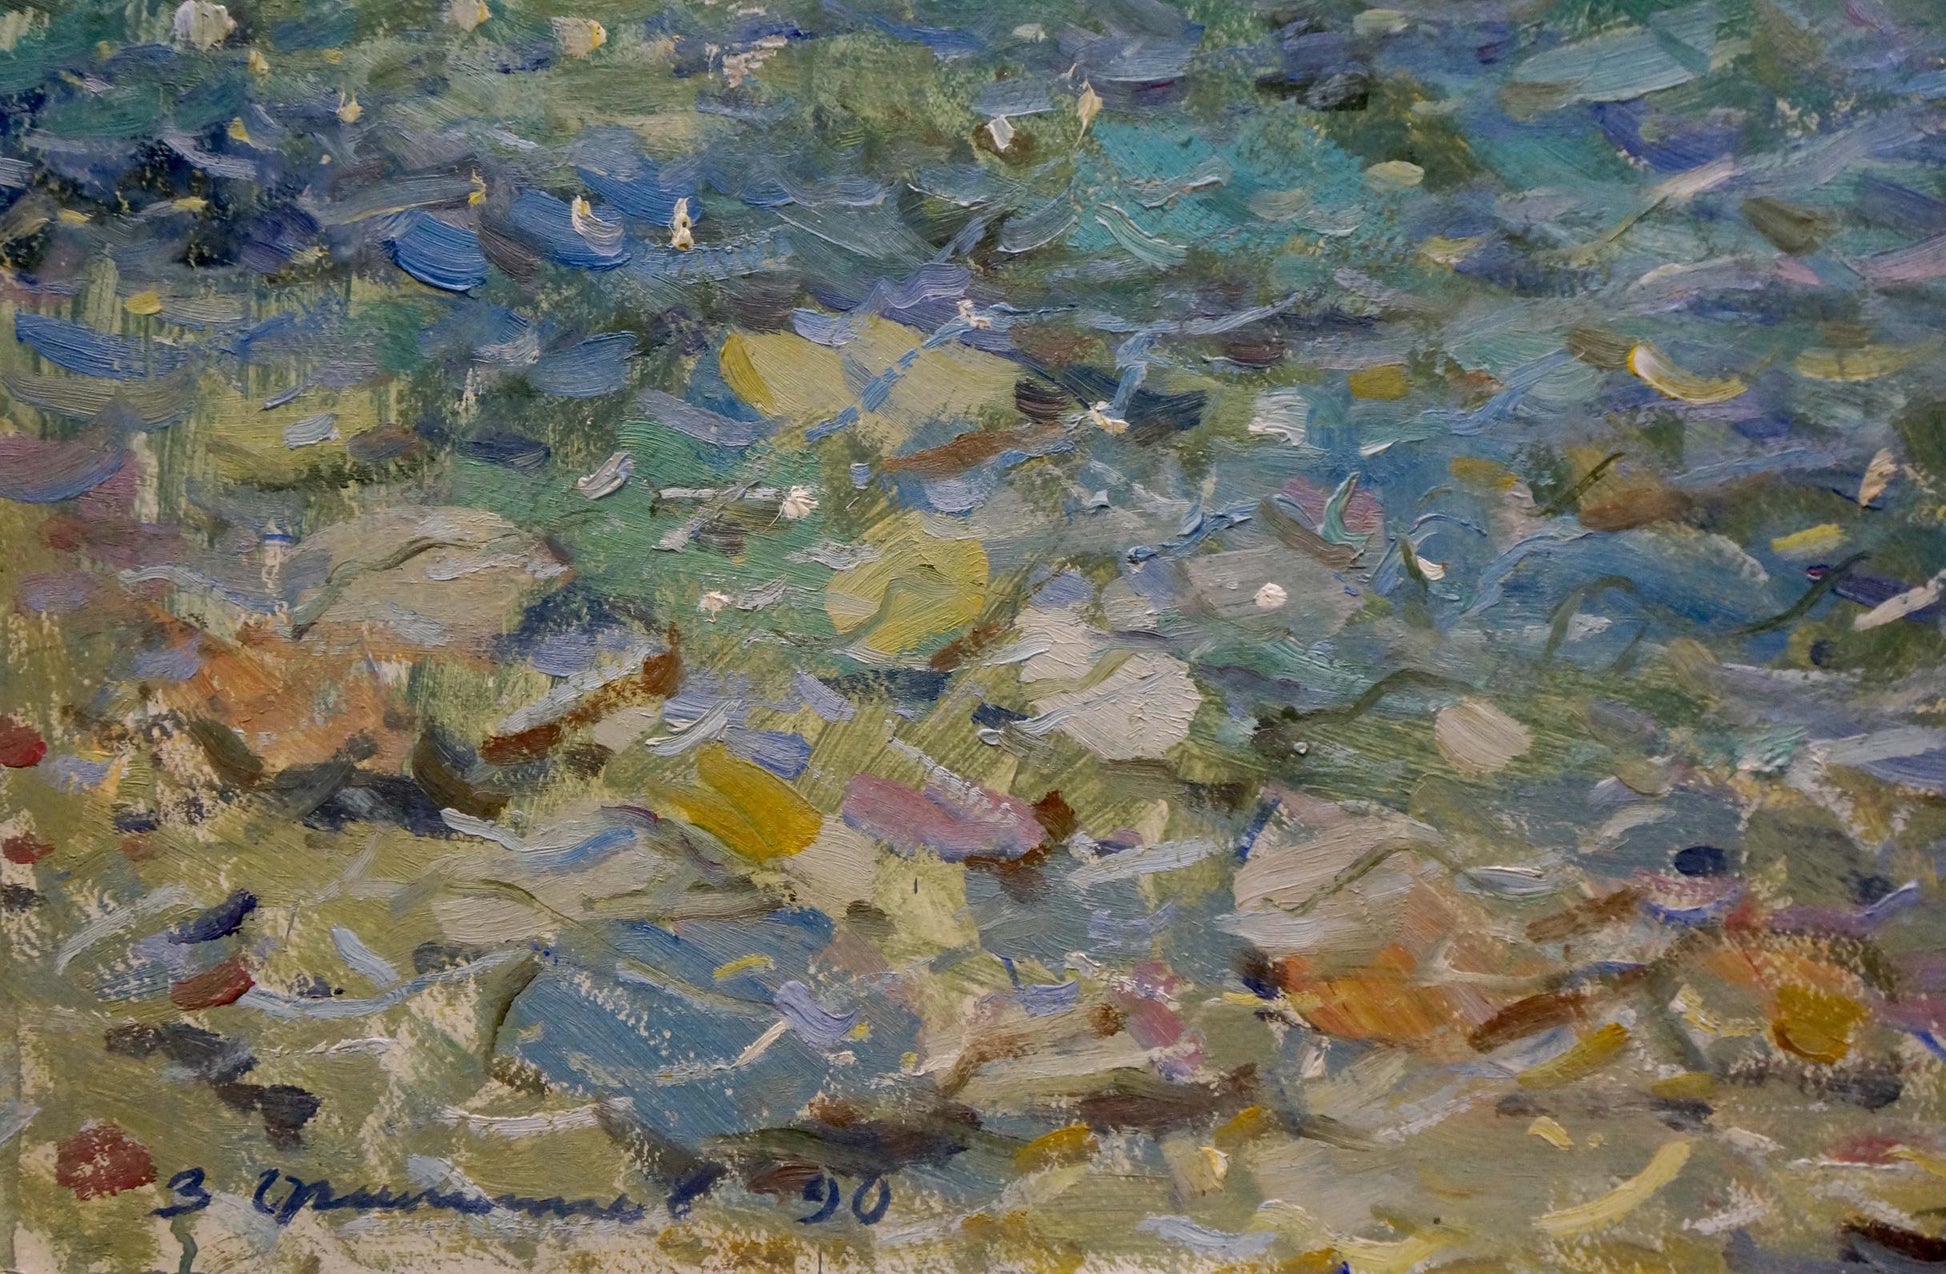 Z. I. Filippov's oil painting examines the seashore